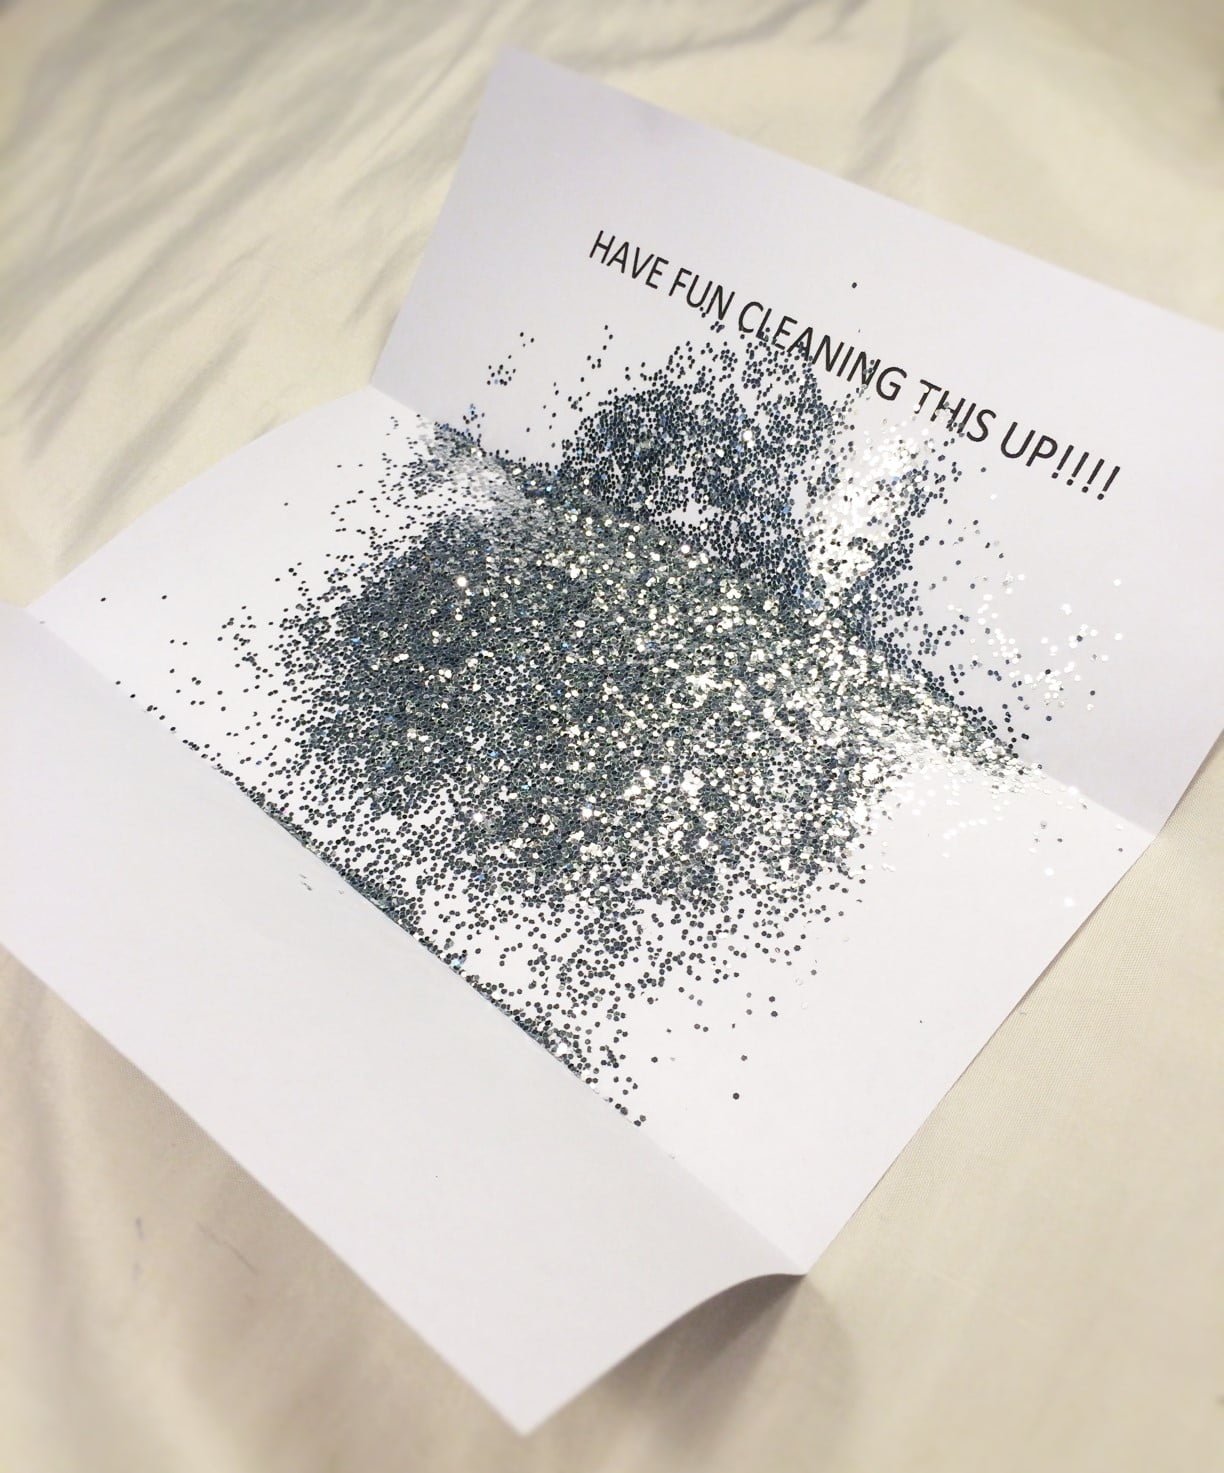 D*ck Glitter Bomb - Funny Prank Mail